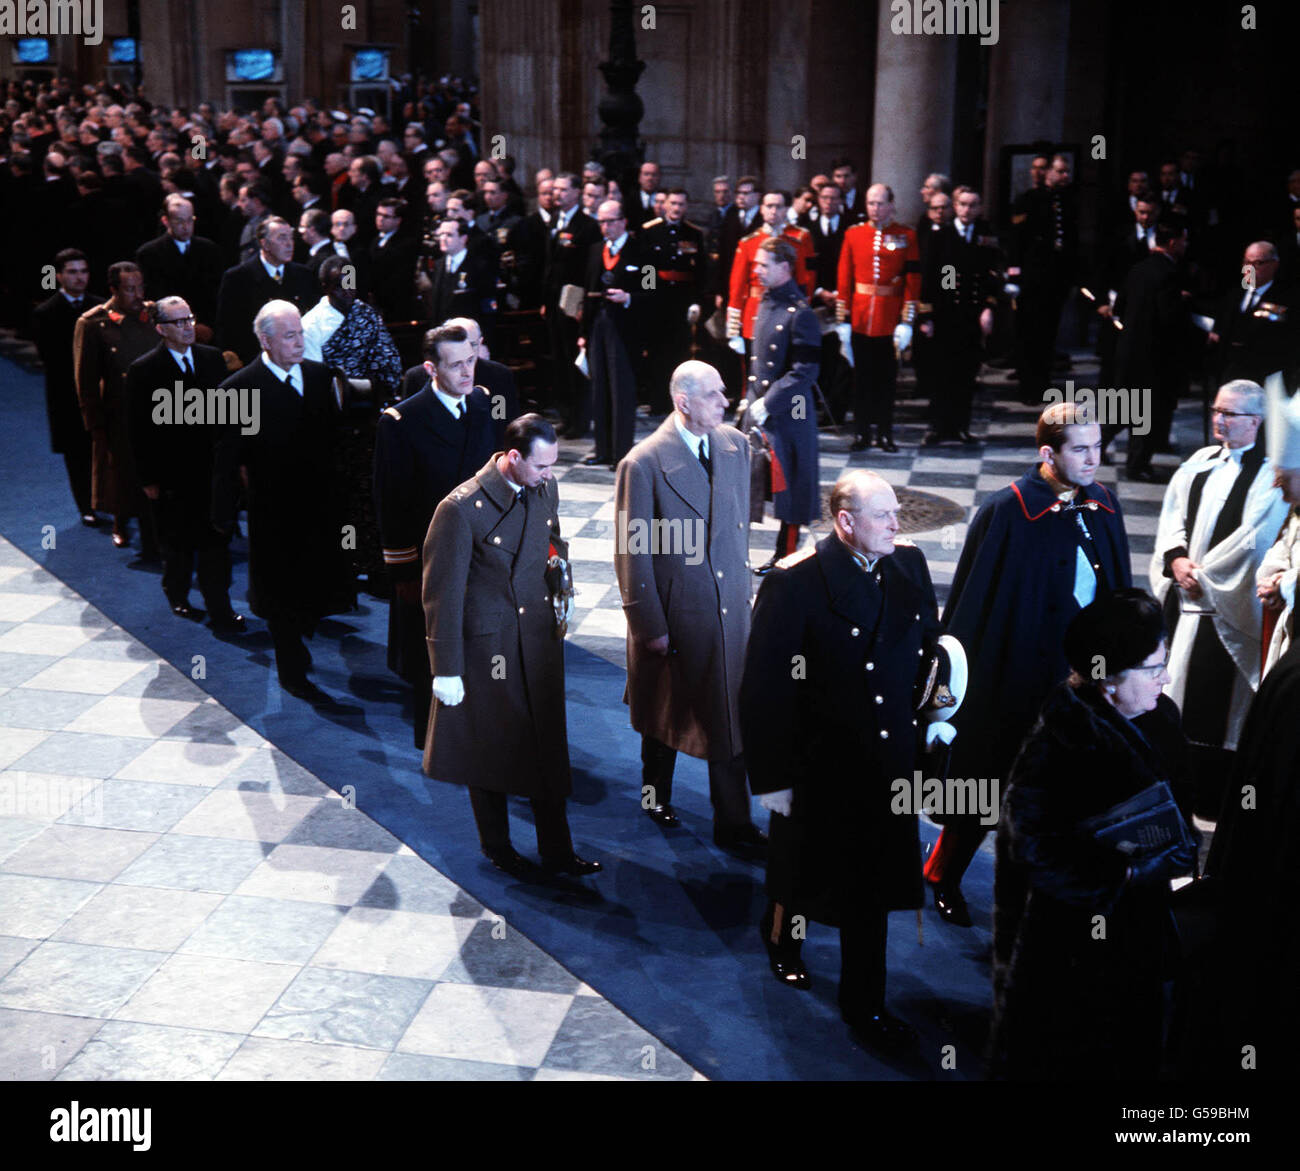 1965: Die Beerdigung von Sir Winston Churchill in der St. Paul's Cathedral, London. Bild zeigt König Konstantin von Griechenland (rechts, in Uniform), König Olaf von Norwegen (mit Konstantin) und General De Gaulle von Frankreich (hinter Konstantin). Stockfoto